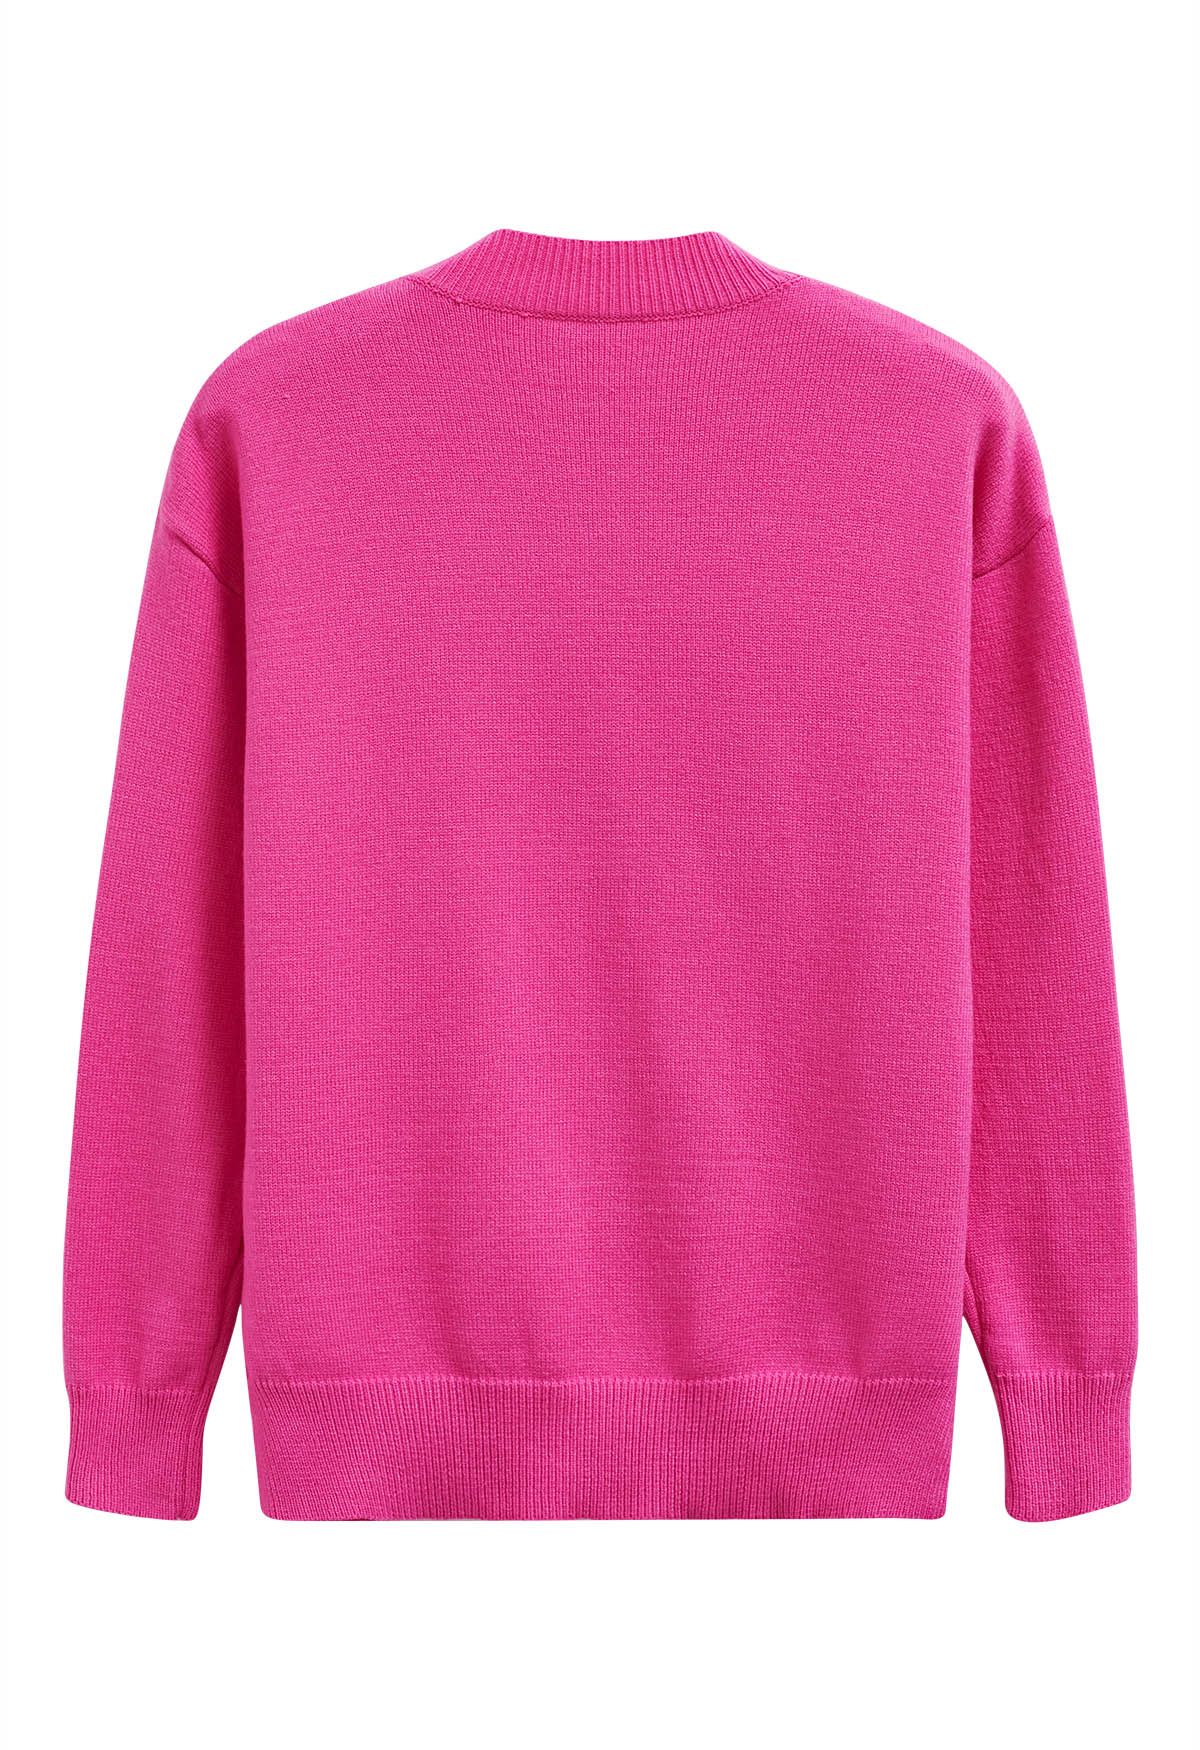 Suéter de punto con estampado de labios rojos en rosa intenso